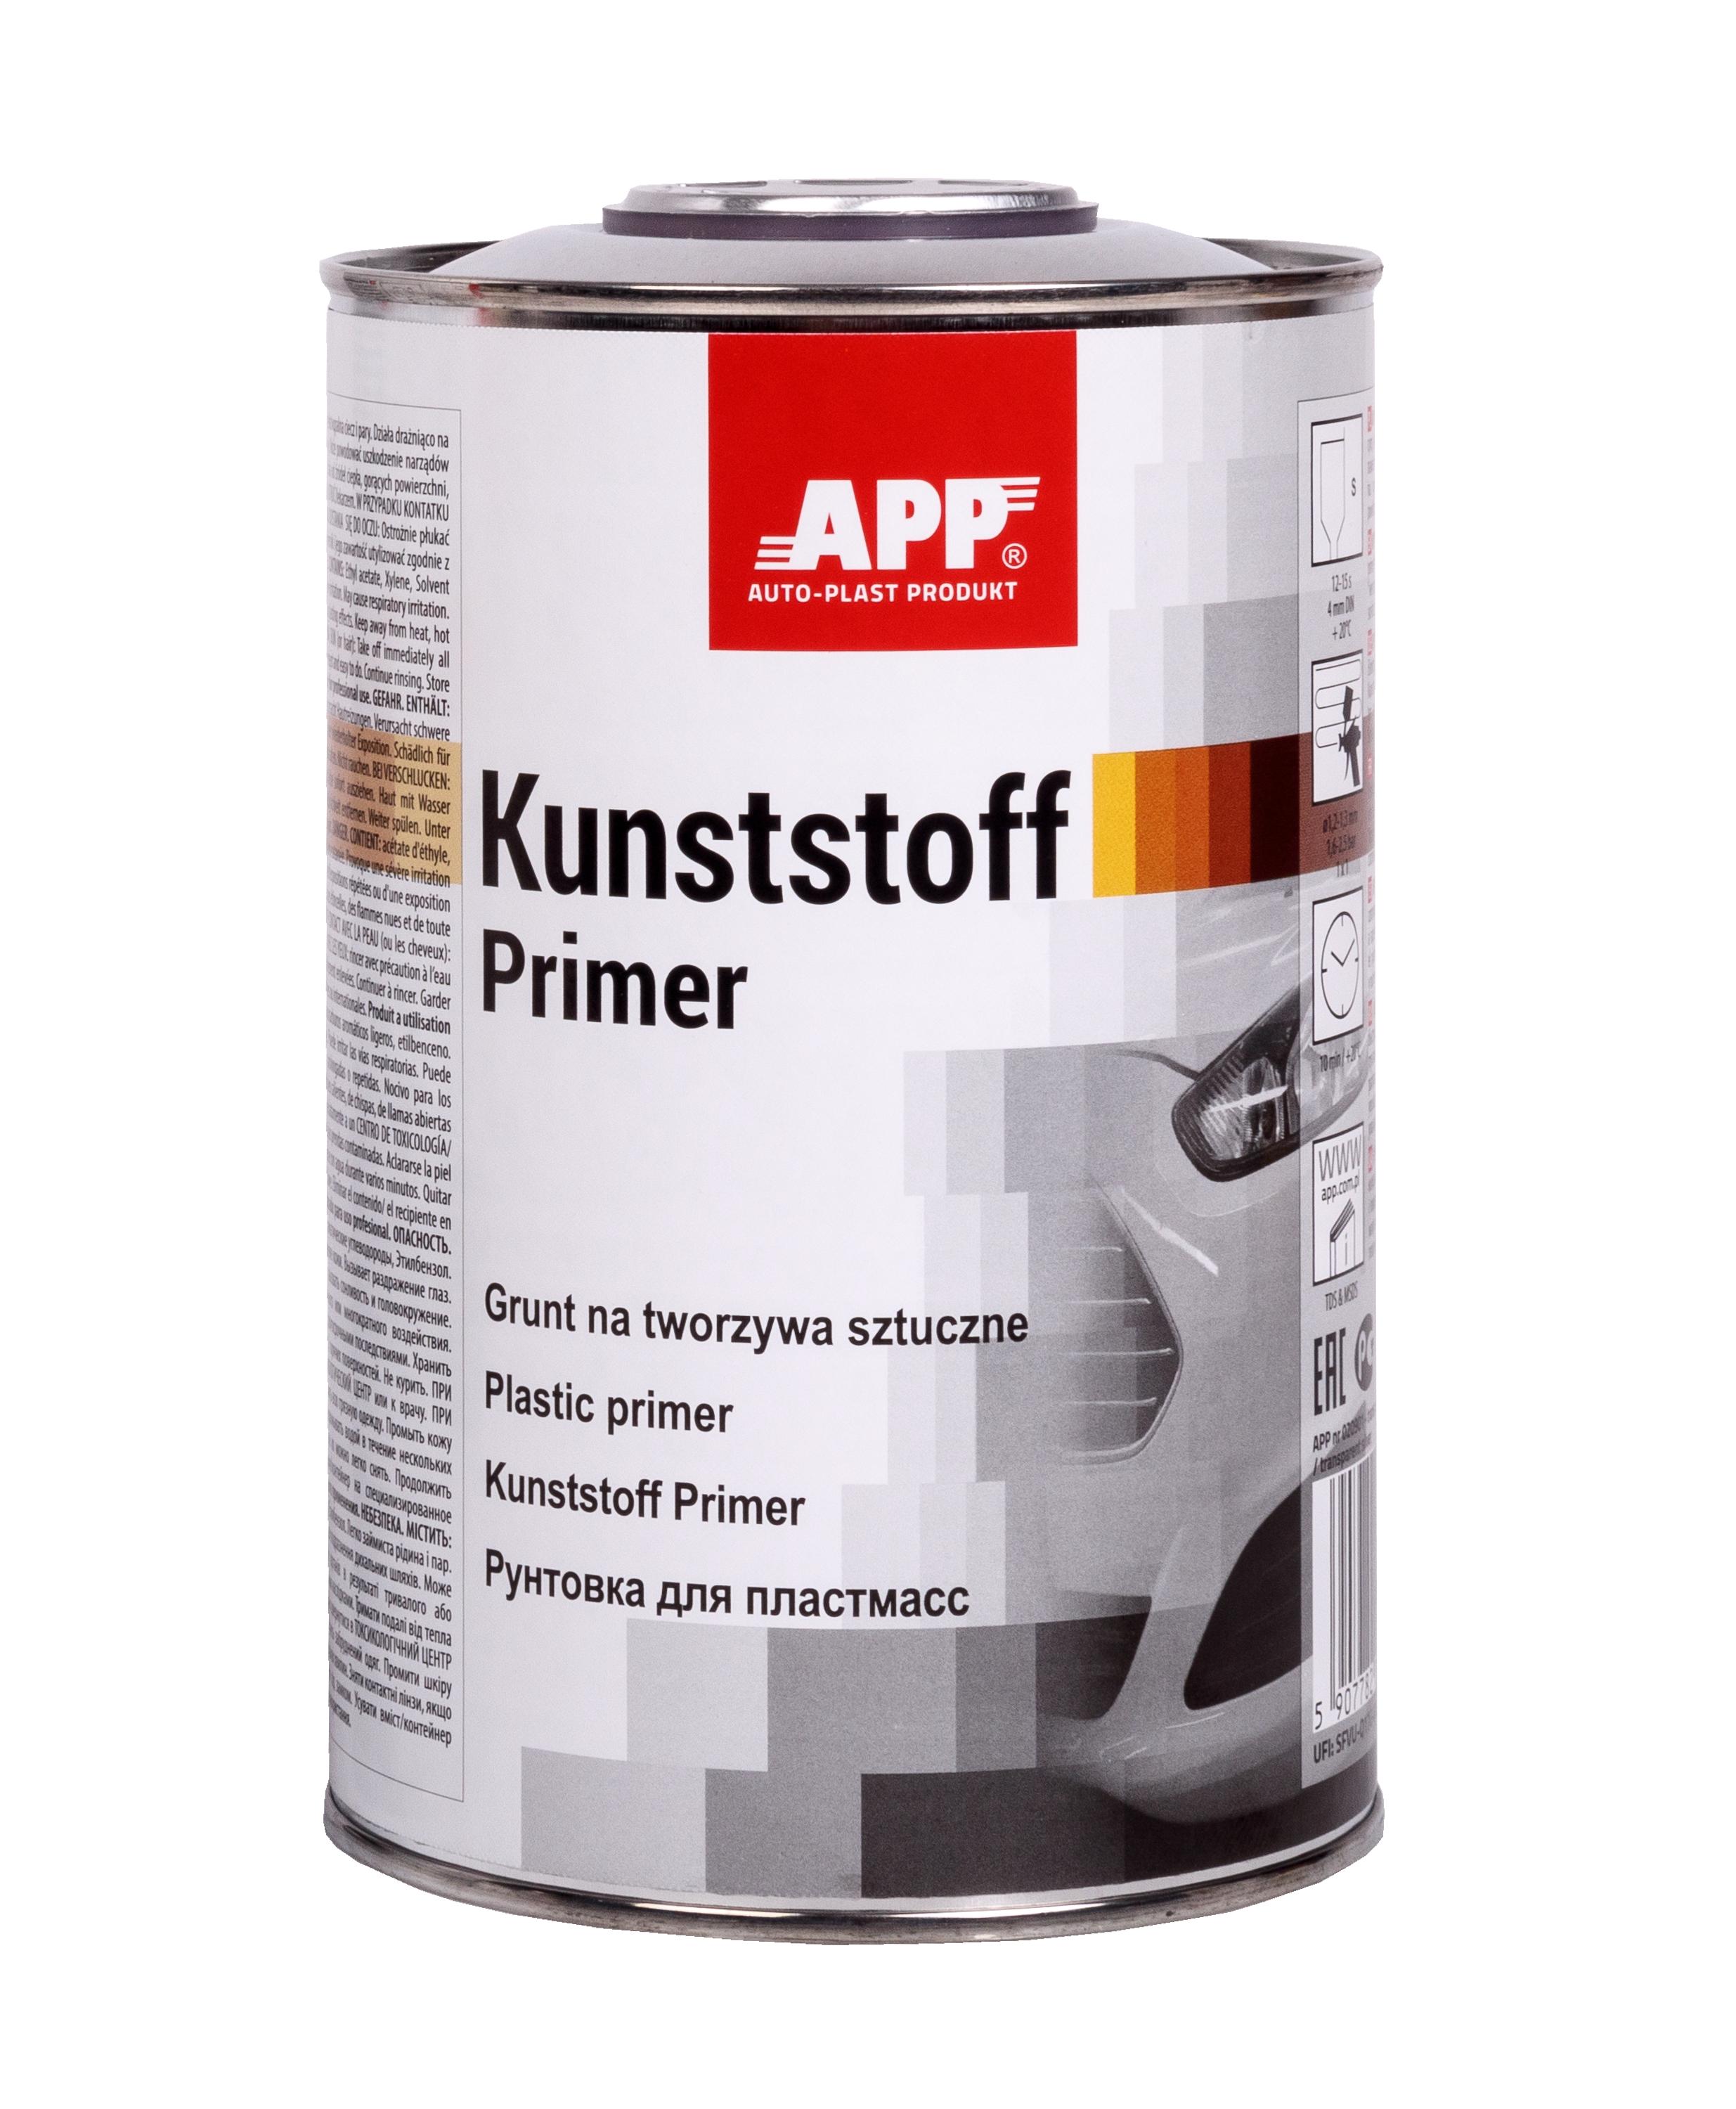 APP 020901 Kunststoff Primer - 1K Haftprimer für Kunststoffe silber 1,0 L | Haftgrund Kunststoffprimer Plasteprimer